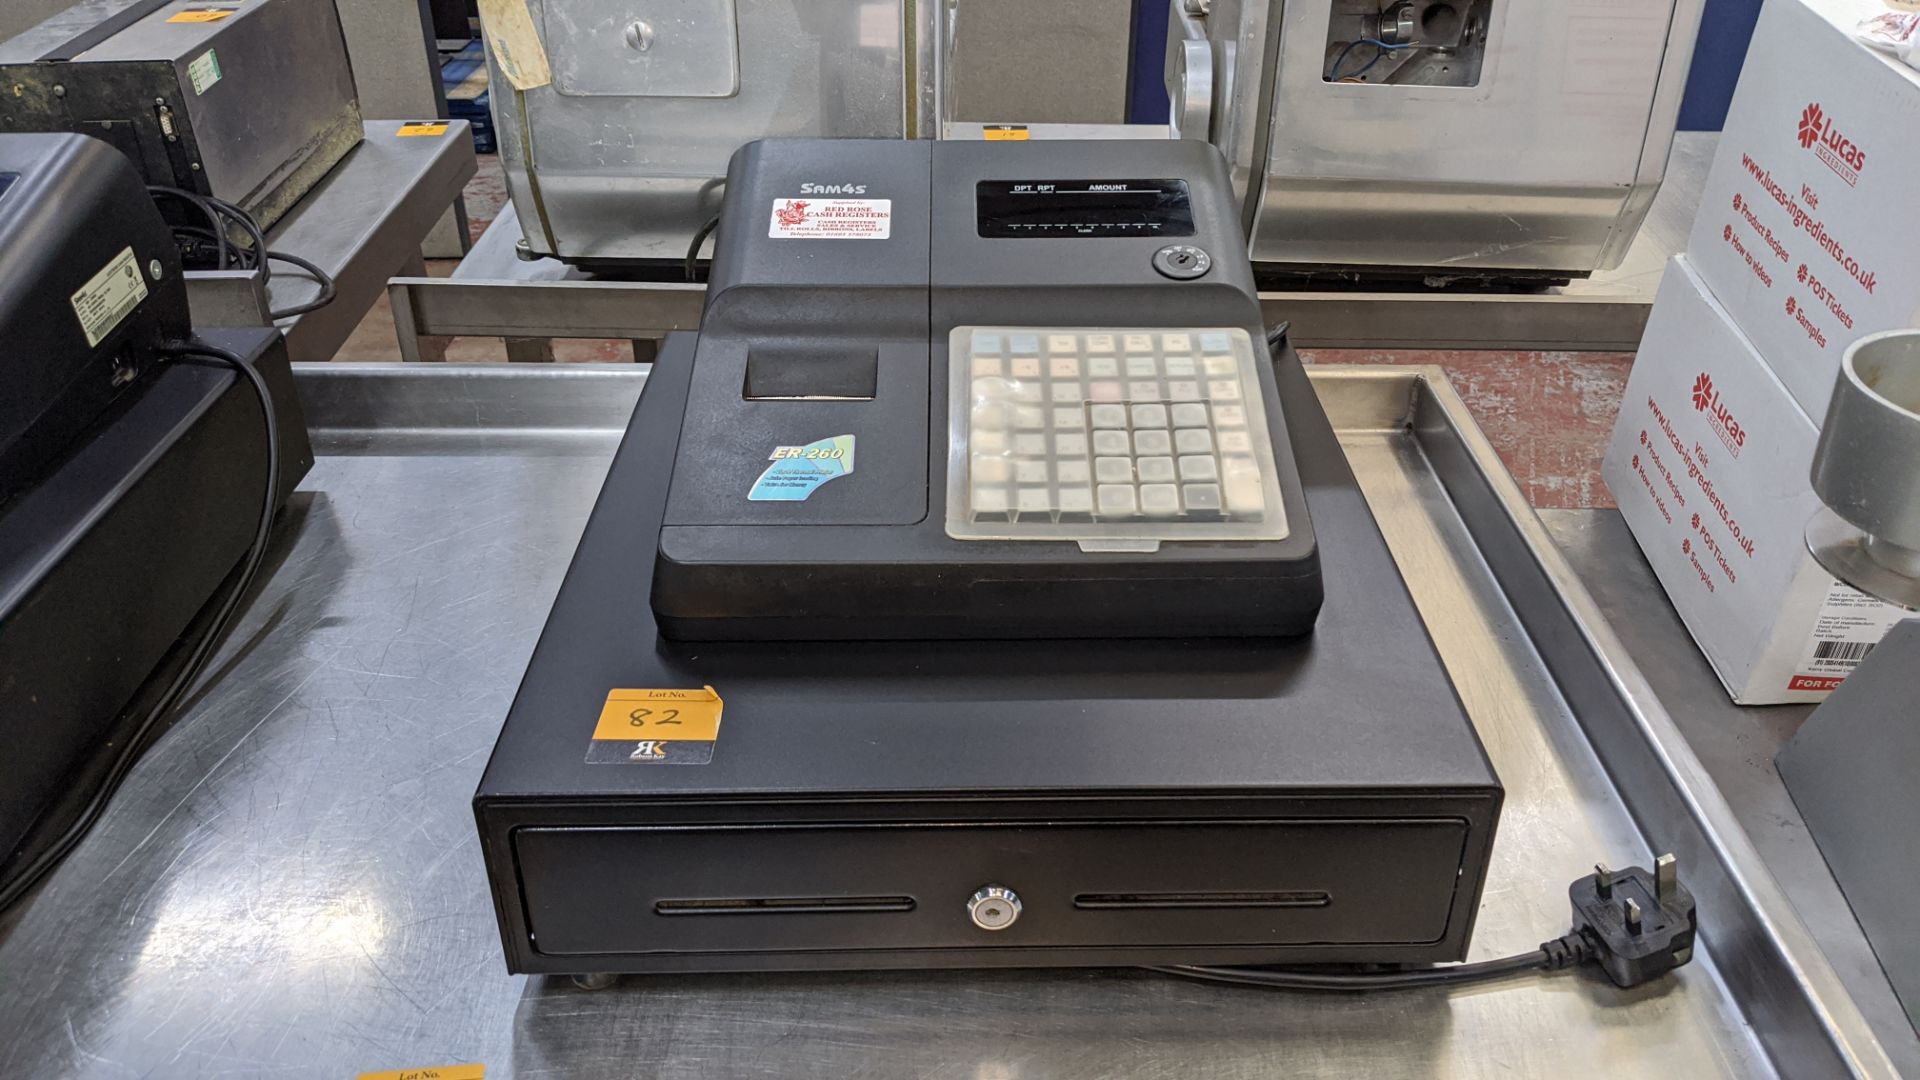 Sam4s cash register with built-in cash drawer - no keys - Image 2 of 5